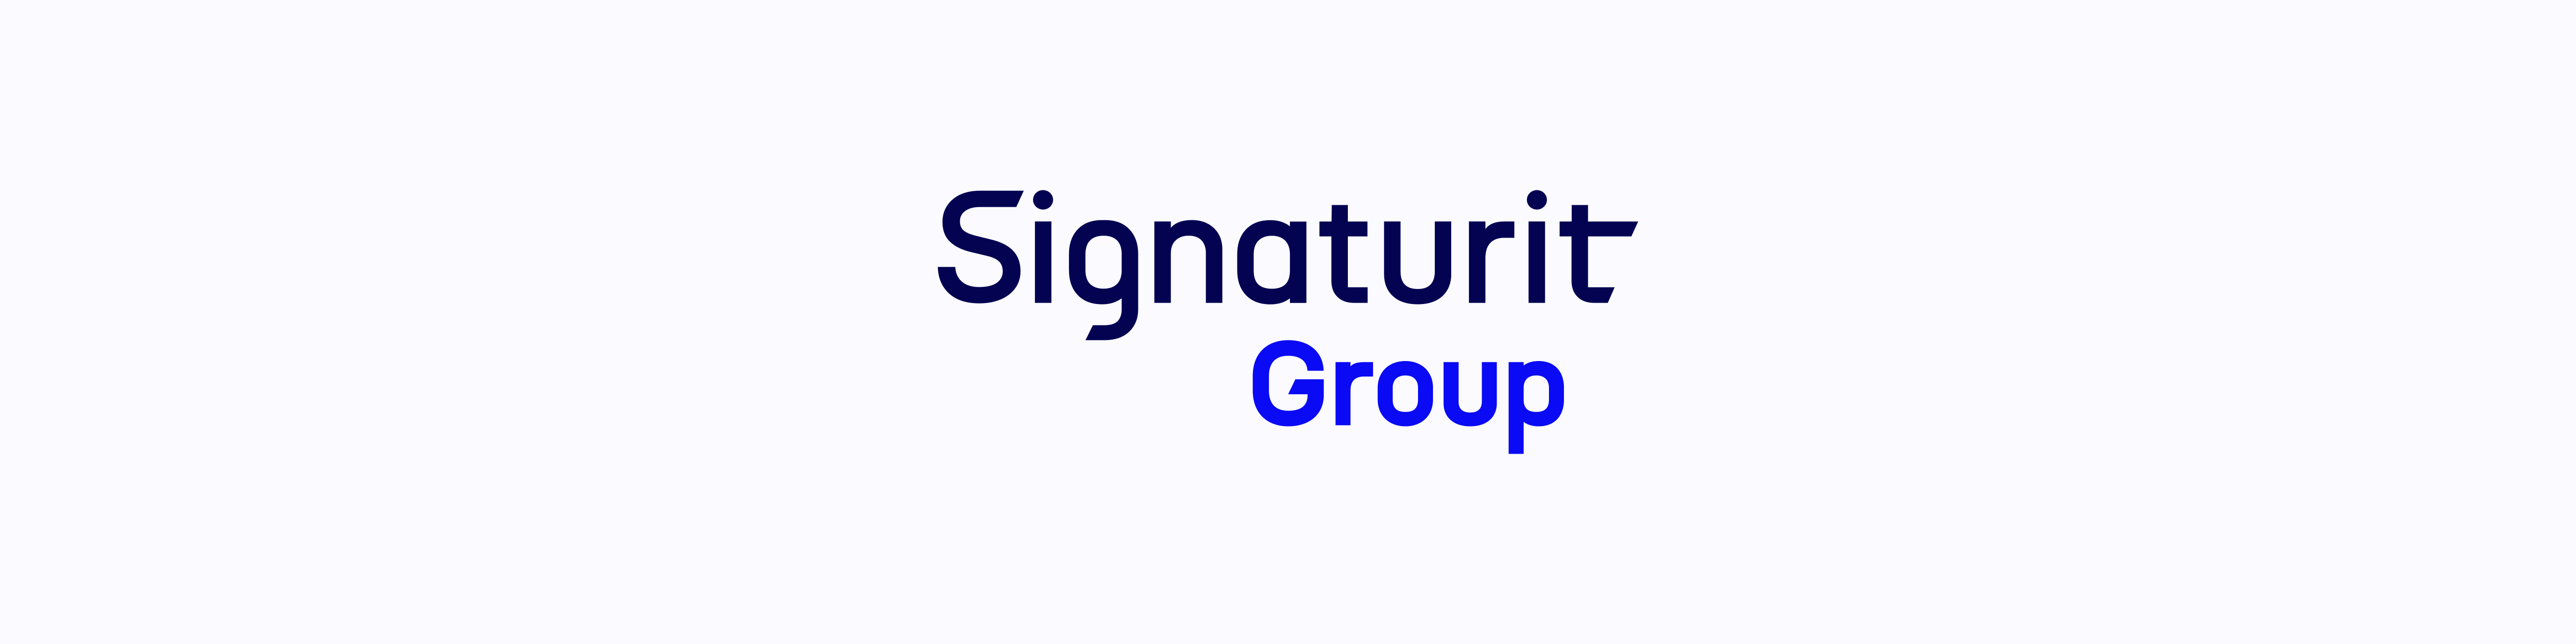 El Grupo Signaturit cierra el semestre con un crecimiento de dos dígitos, y un 33% más de transacciones electrónicas que en el mismo periodo de 2022